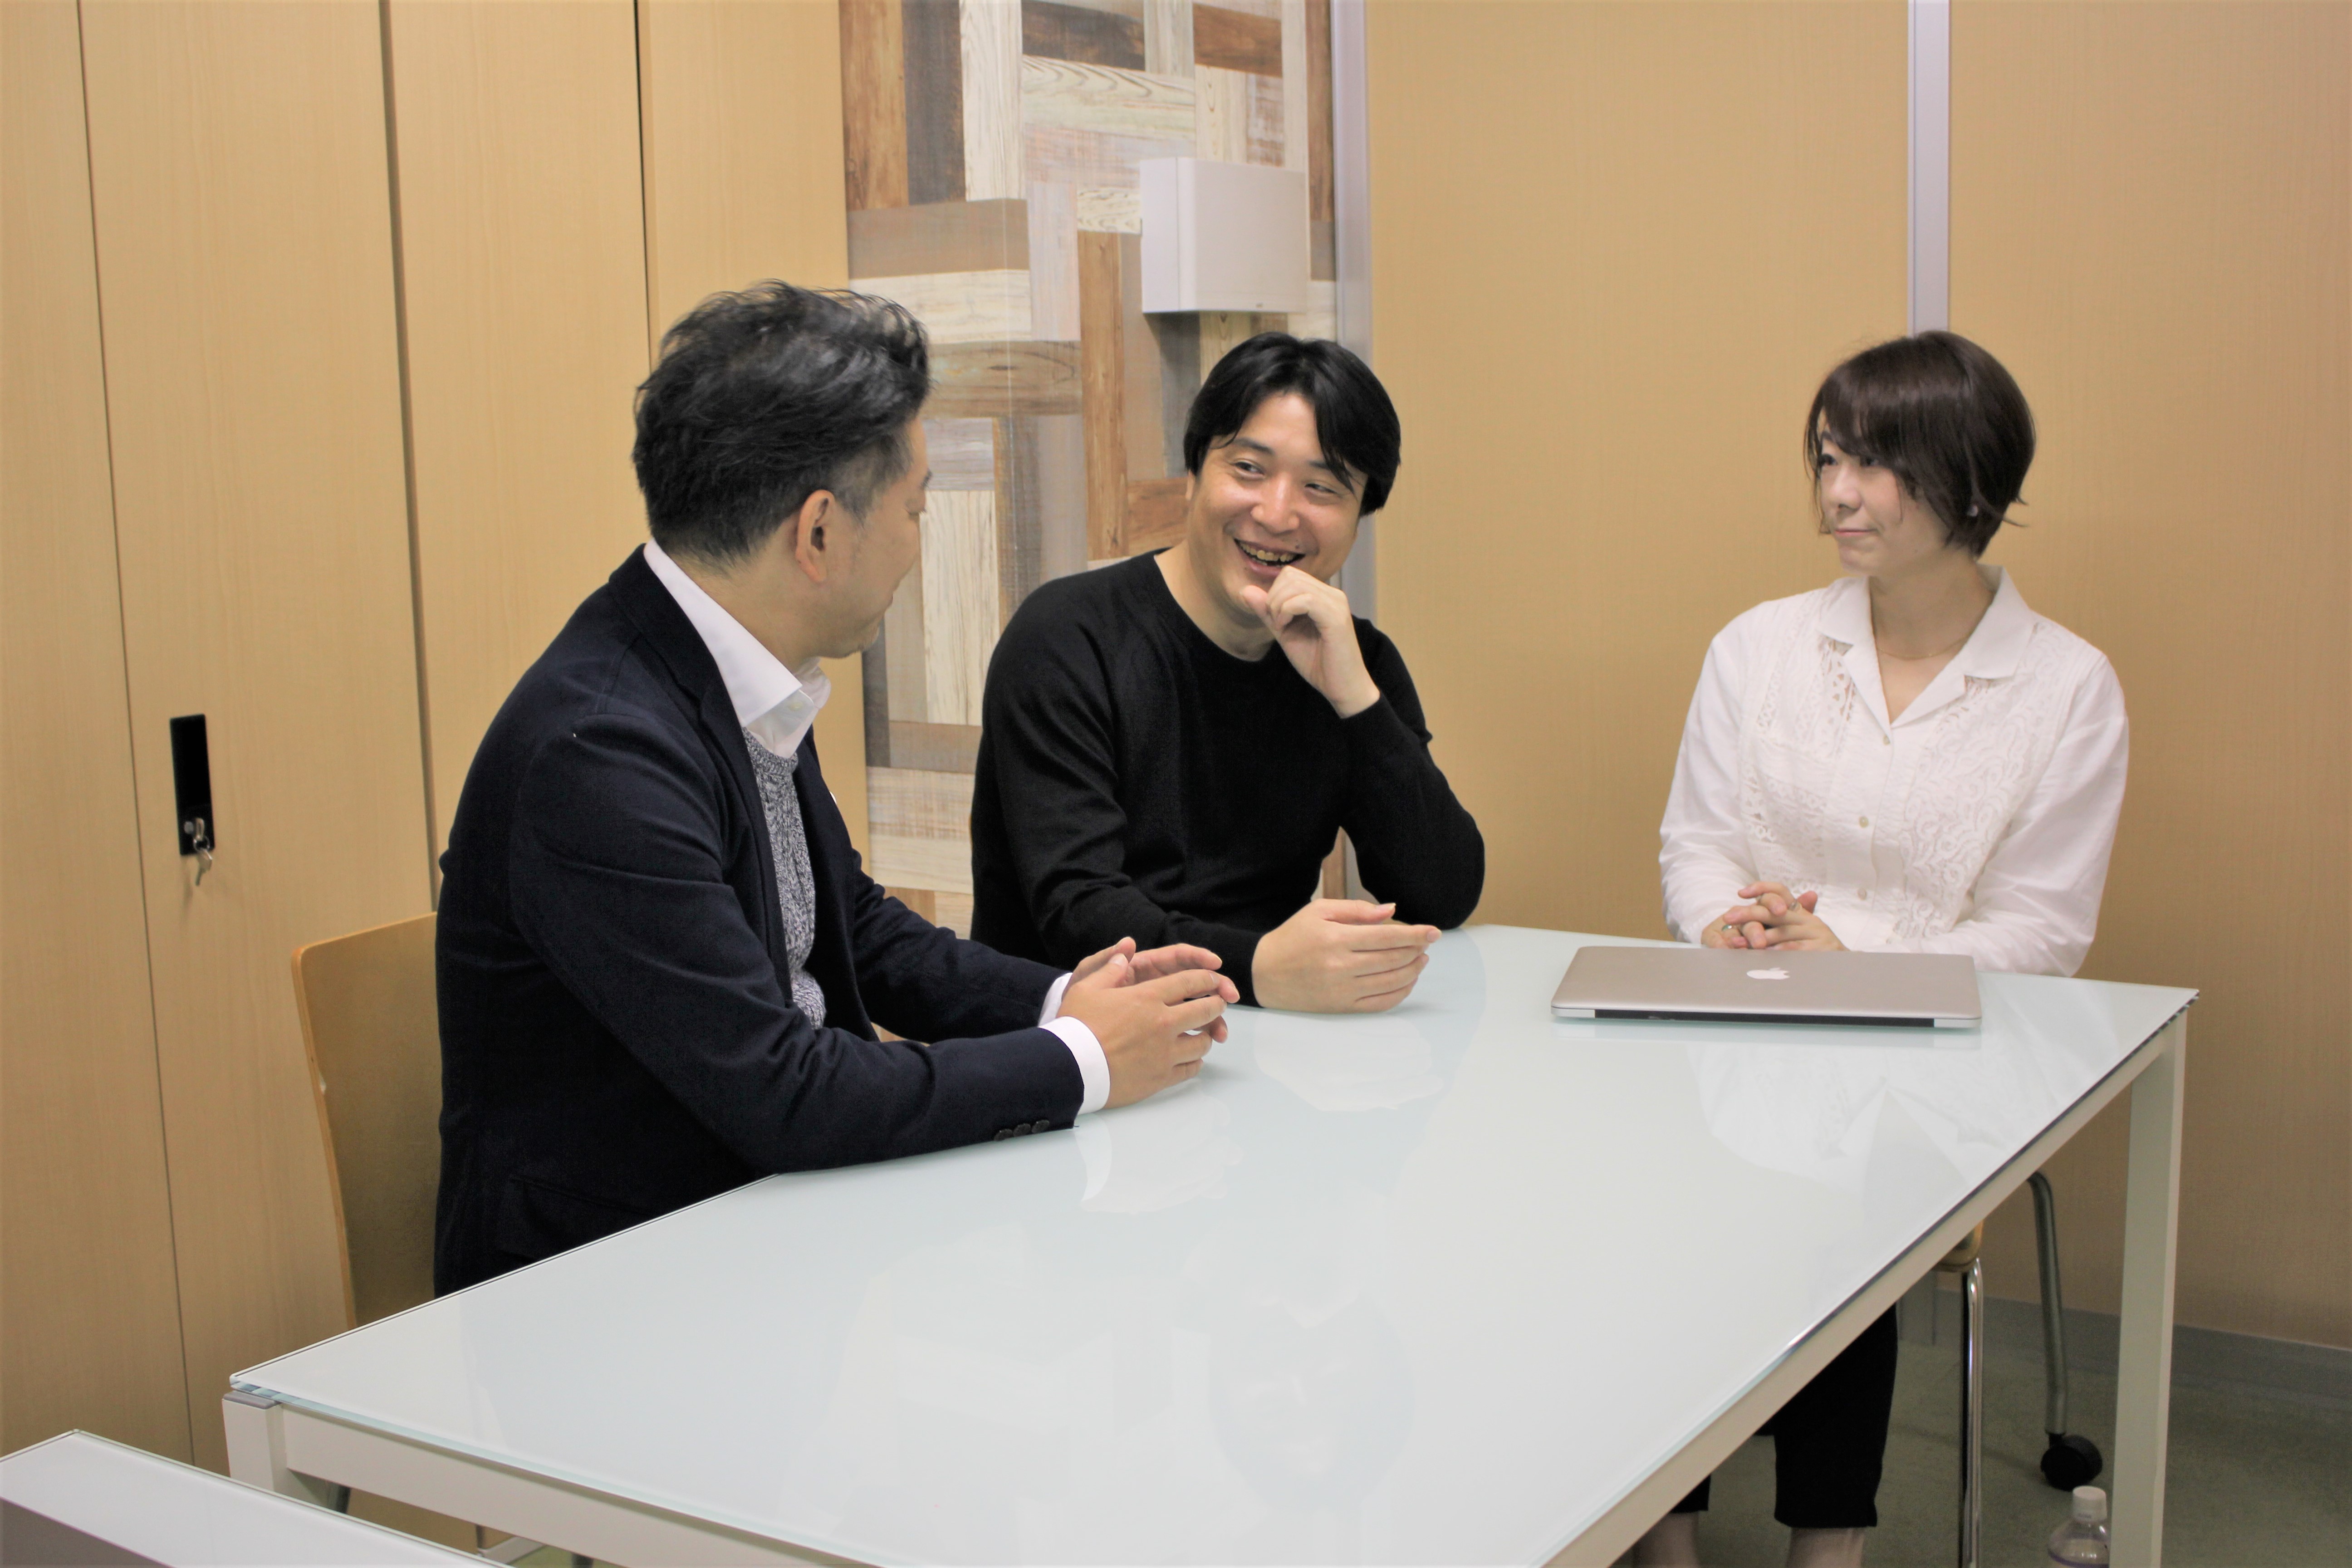 千葉県の企業・行政・地域団体が顧客の9割を占めている、まさに地域に根ざした企業だ。